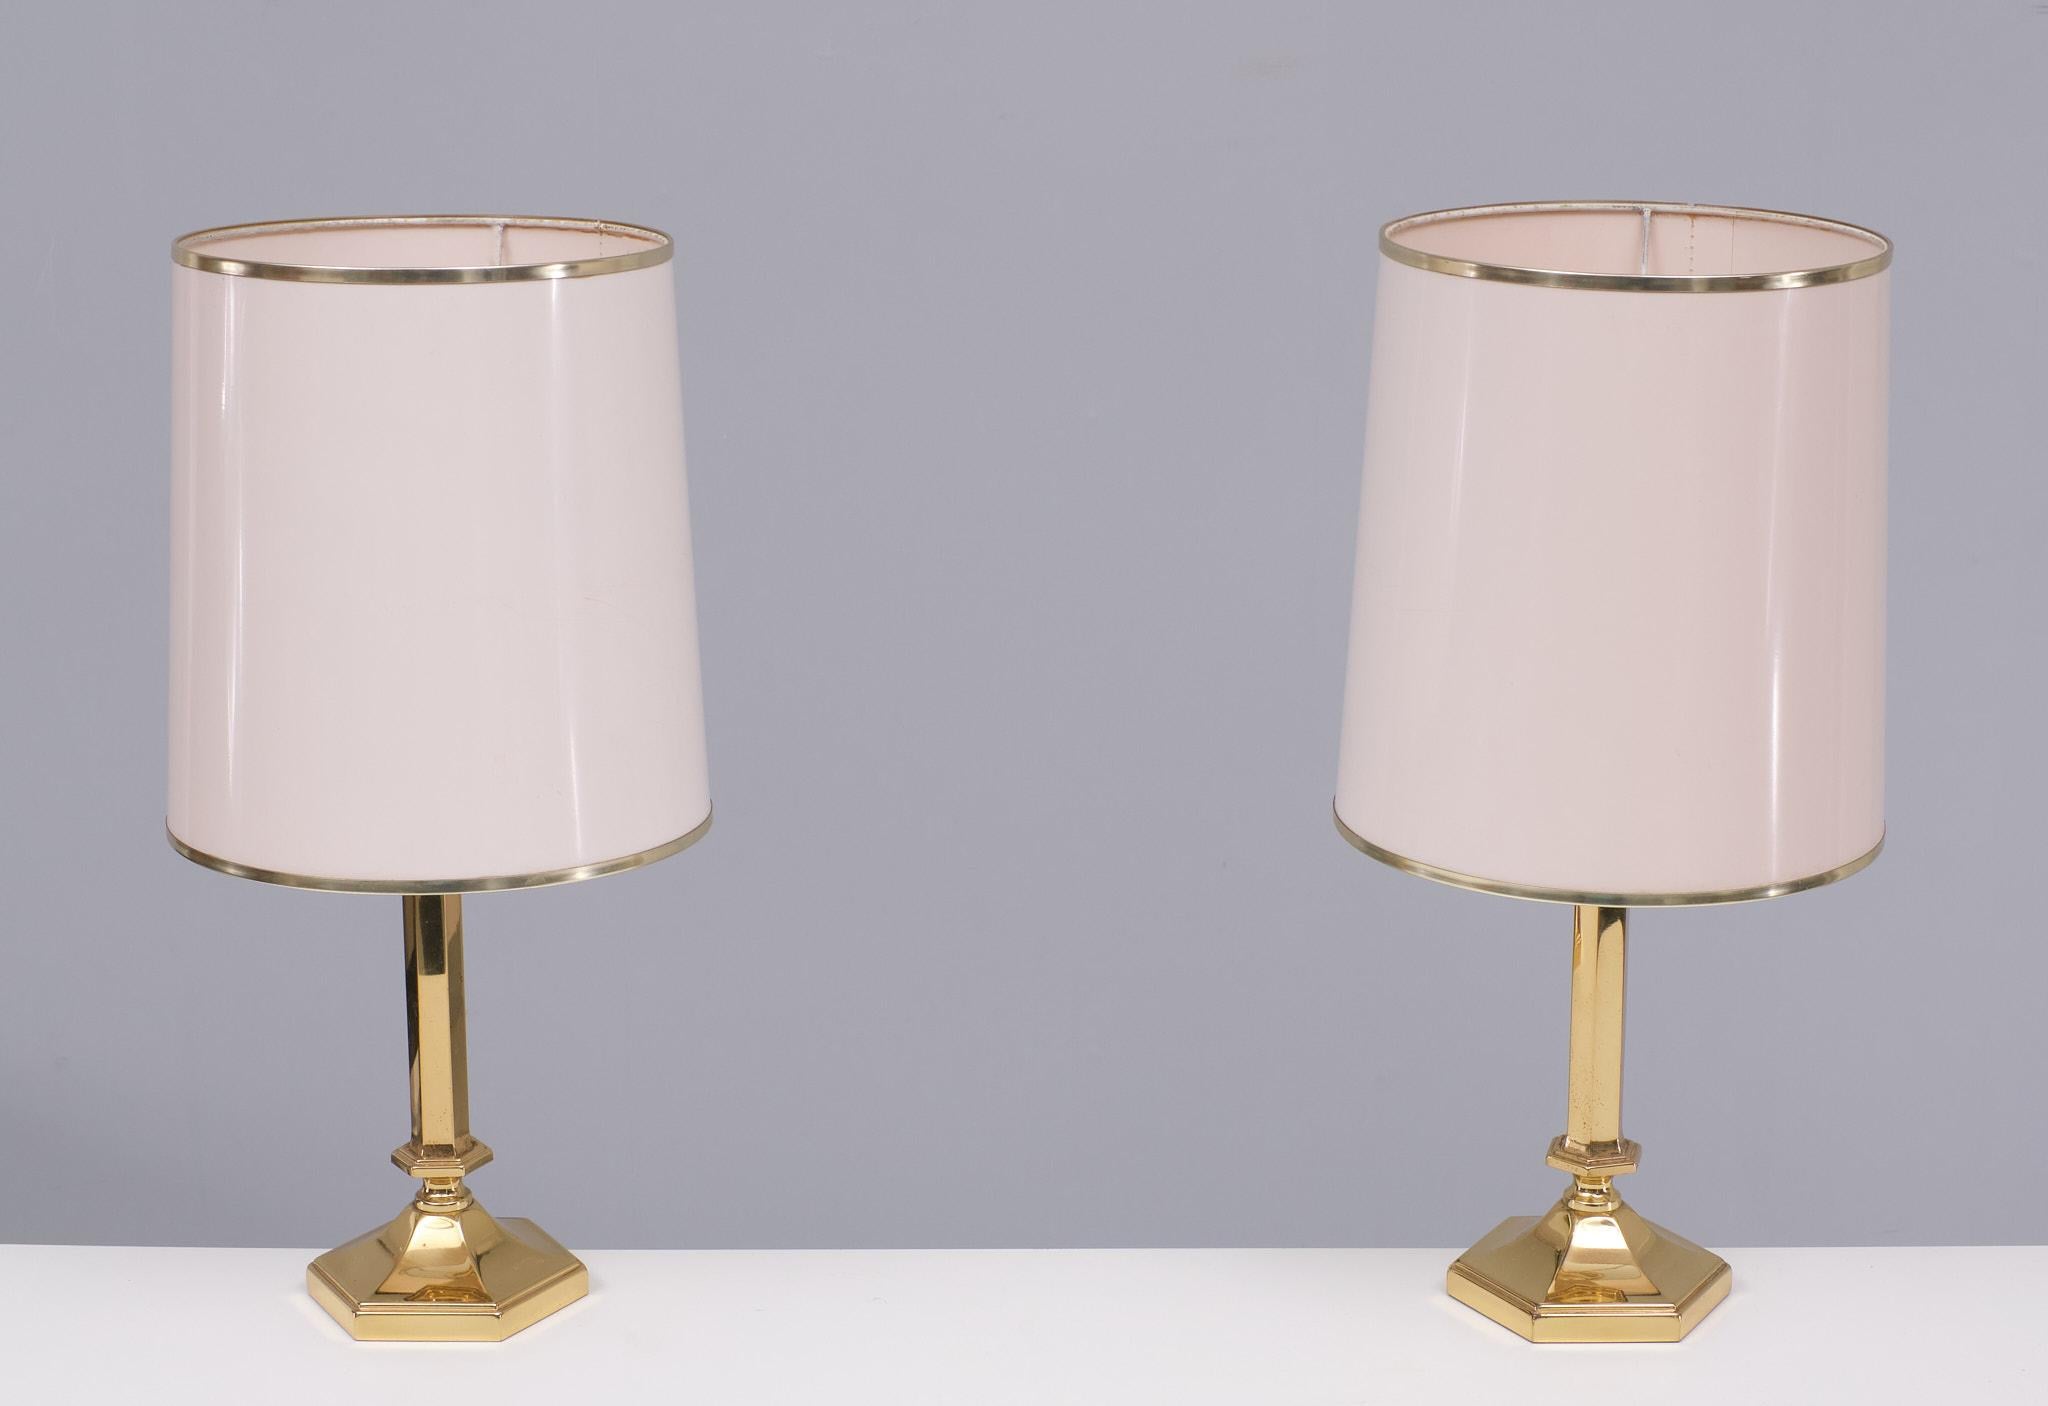 Paar Tischlampen aus Messing, mit originalen weißen Lampenschirmen,
mit Felgen aus Messing . Höhe ohne Schirme 25 cm Durchmesser 12 cm .
Guter Zustand. 